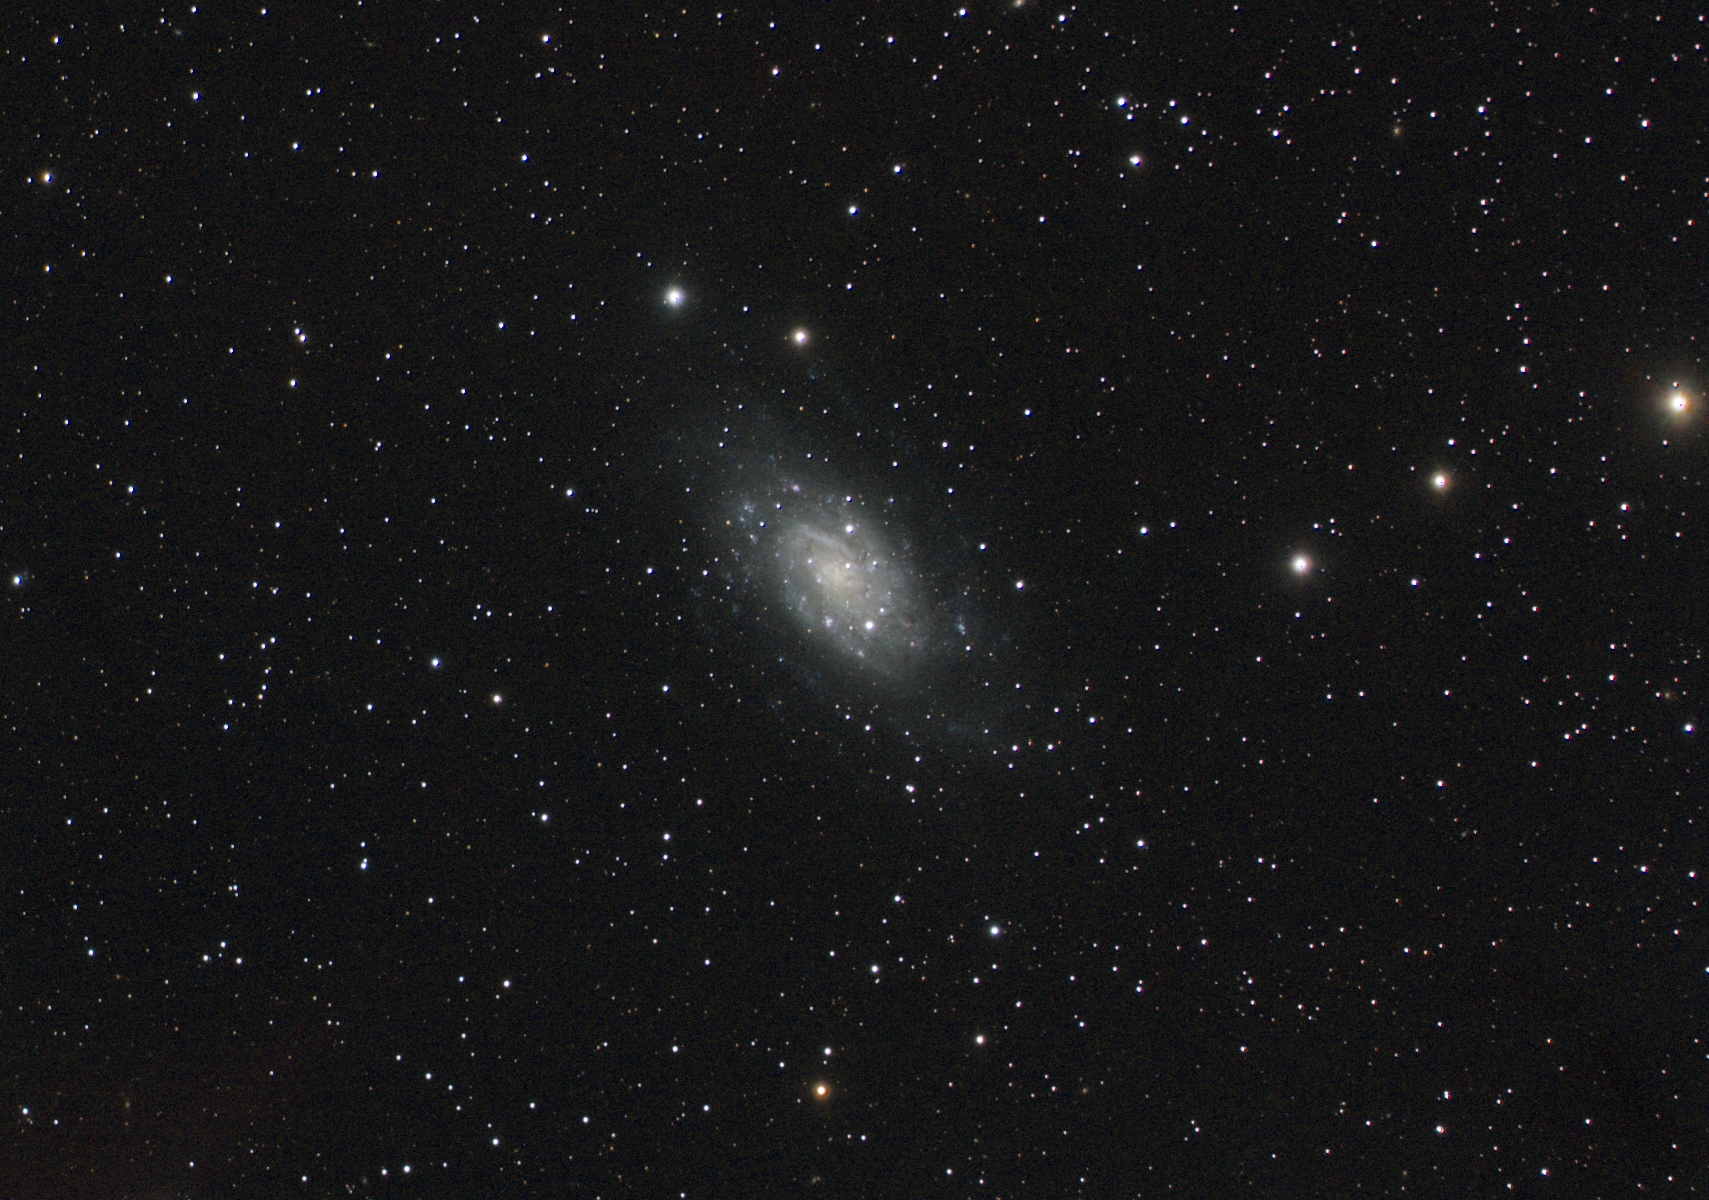 618d8b30d30d7_NGC2403432121120121etalrecadrre.jpg.a406d6b28331656efb63339d586860d7.jpg